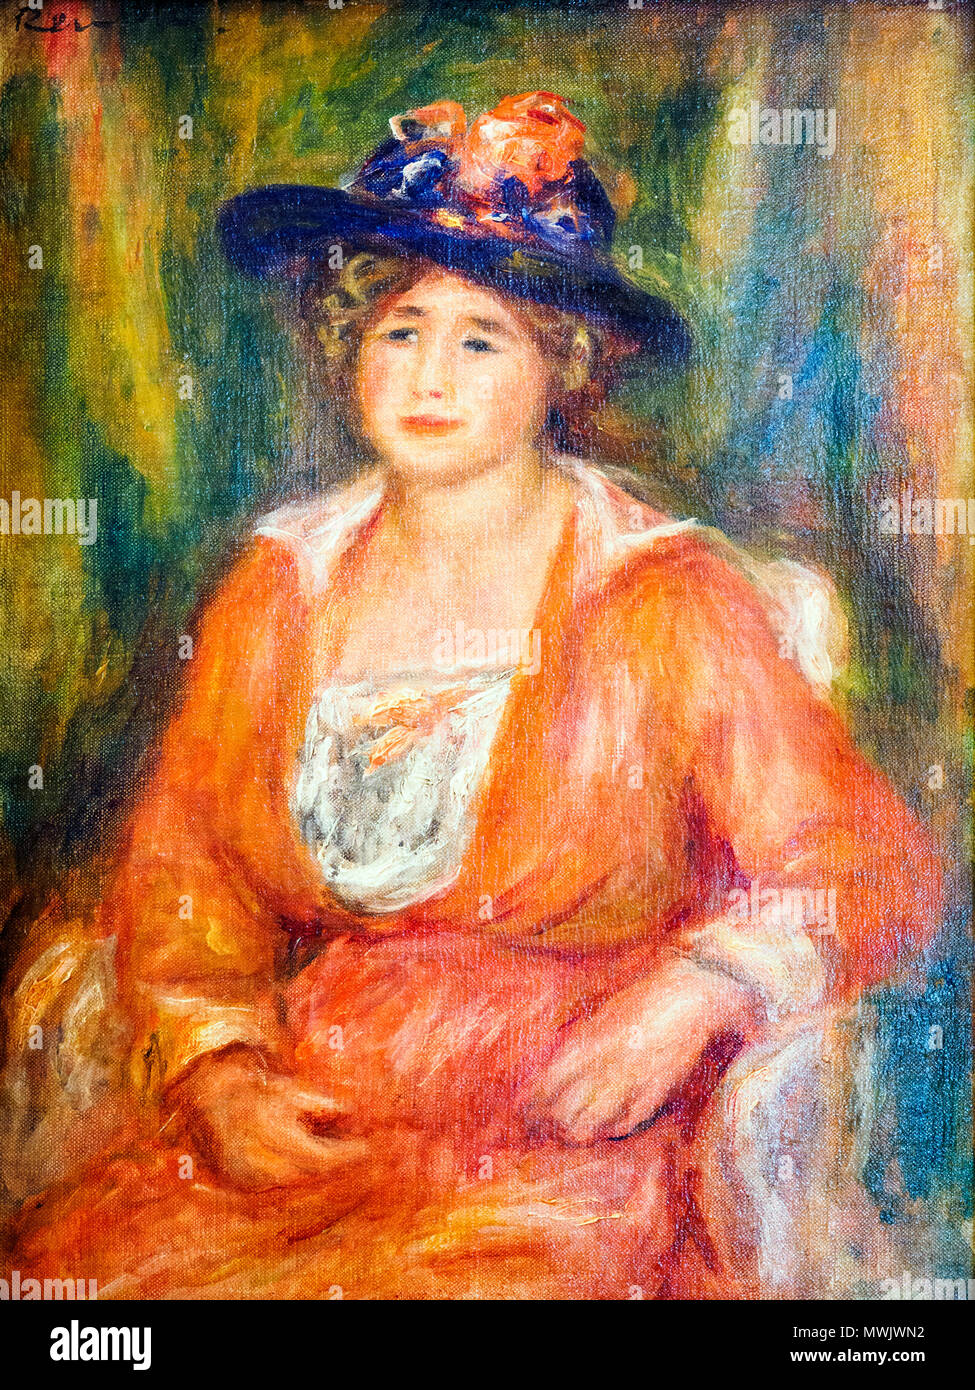 Portrait de femme assise (Portrait of a sitting woman) by Auguste Renoir (1841 - 1919) Stock Photo